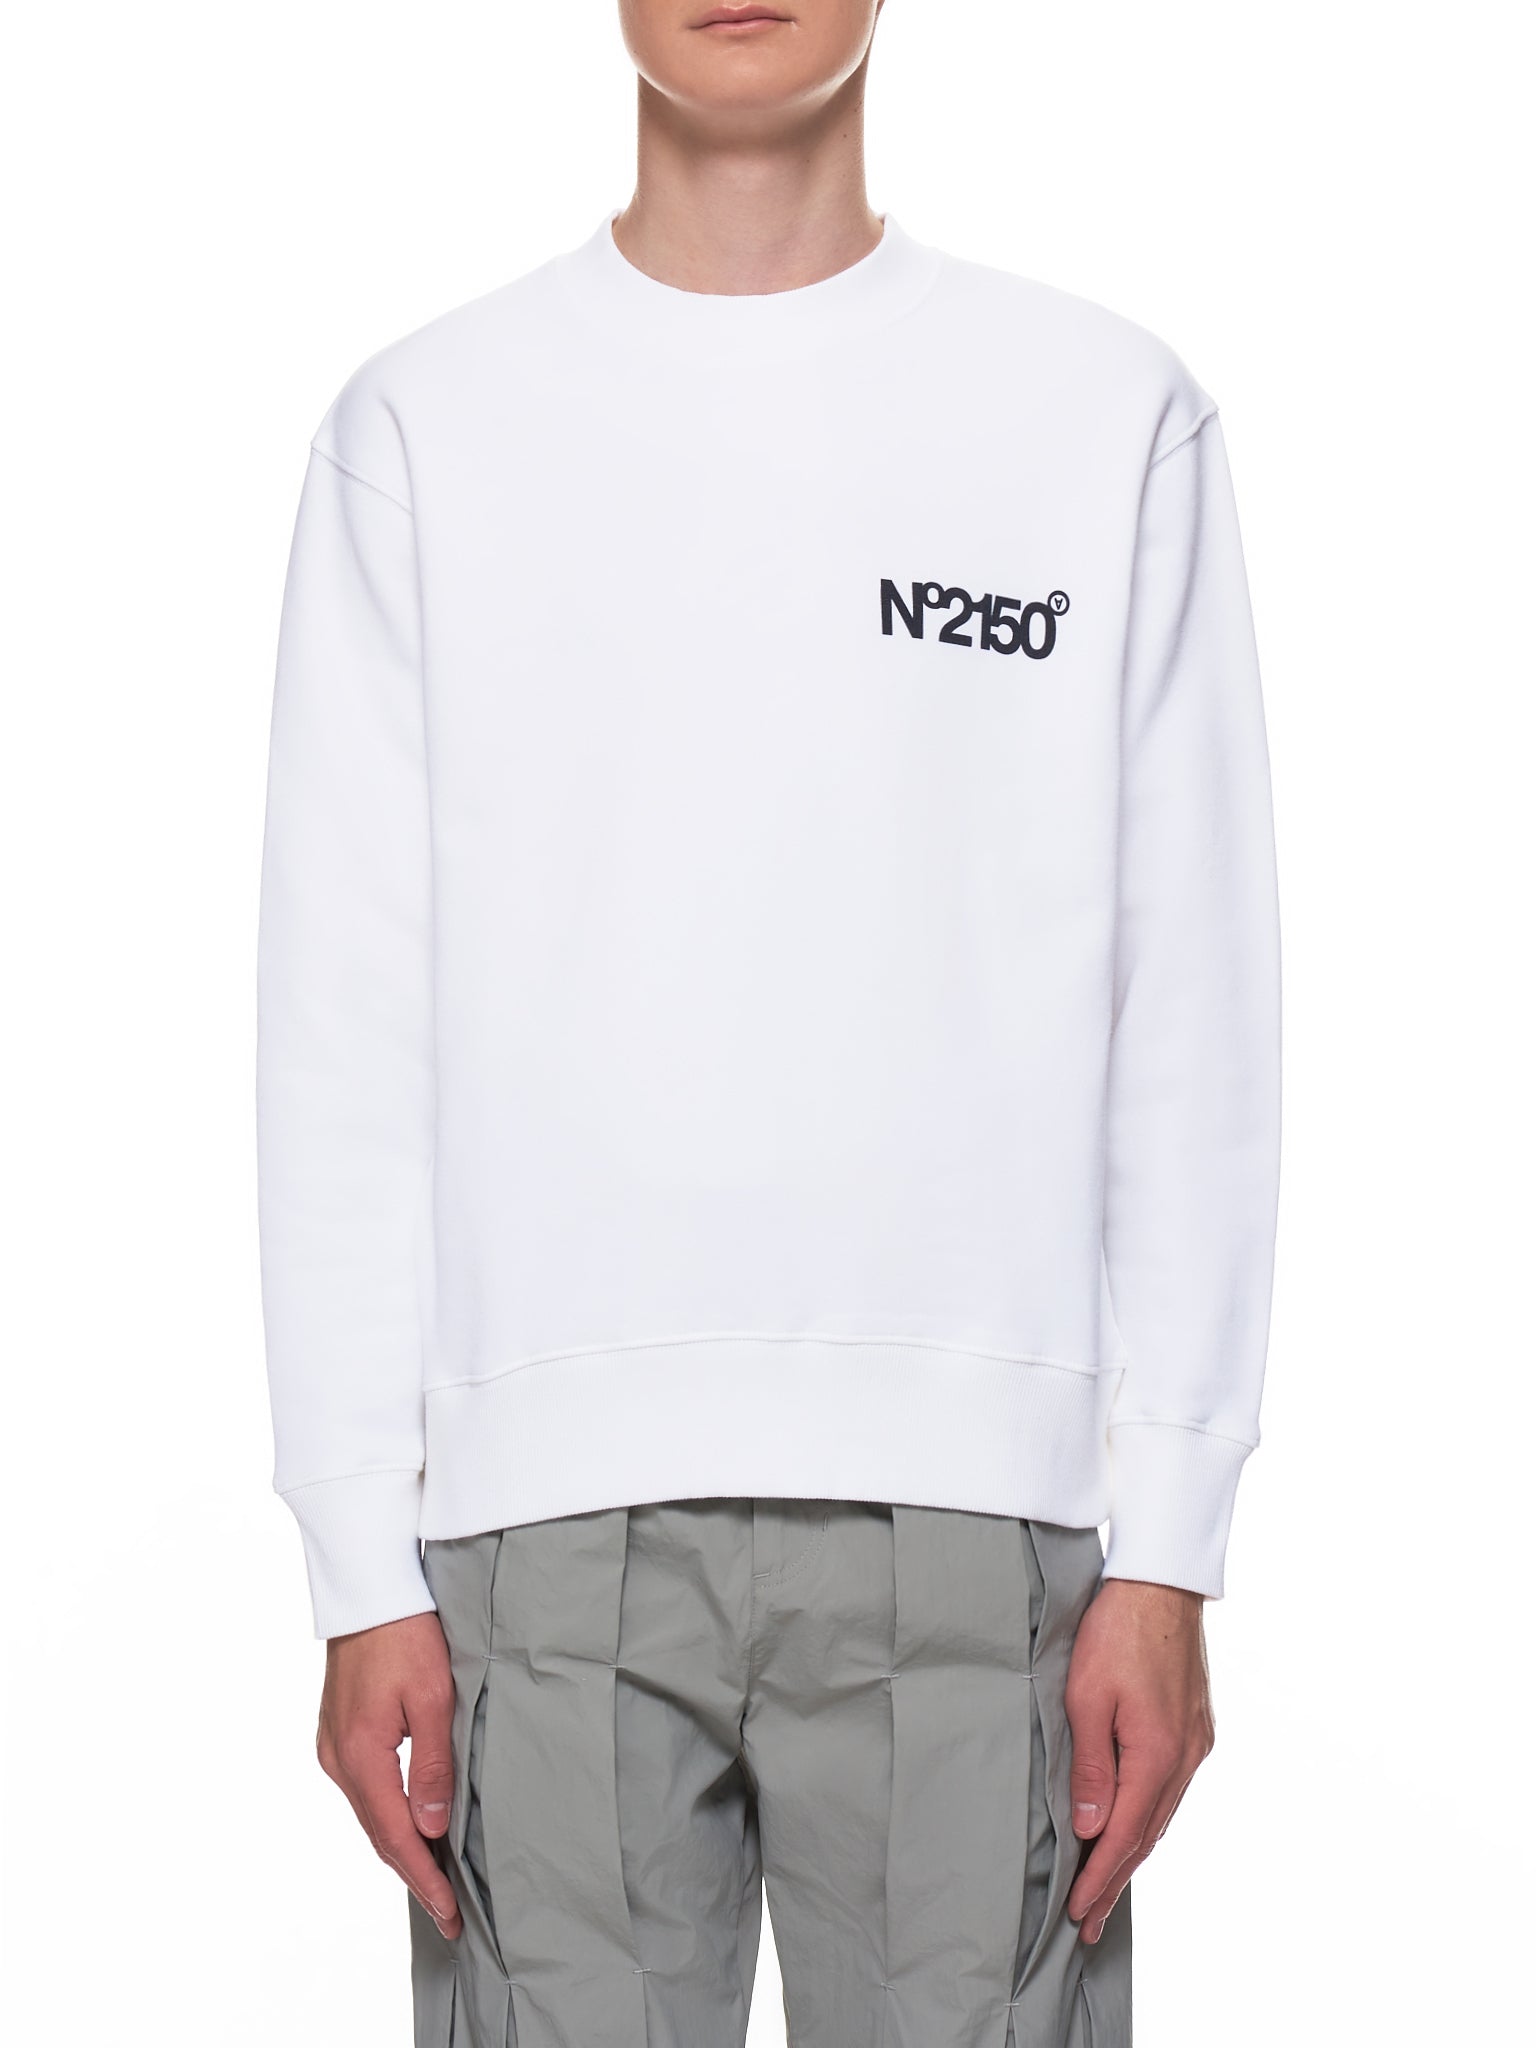 No. 2150 Sweatshirt (2150-CNS-WHITE)